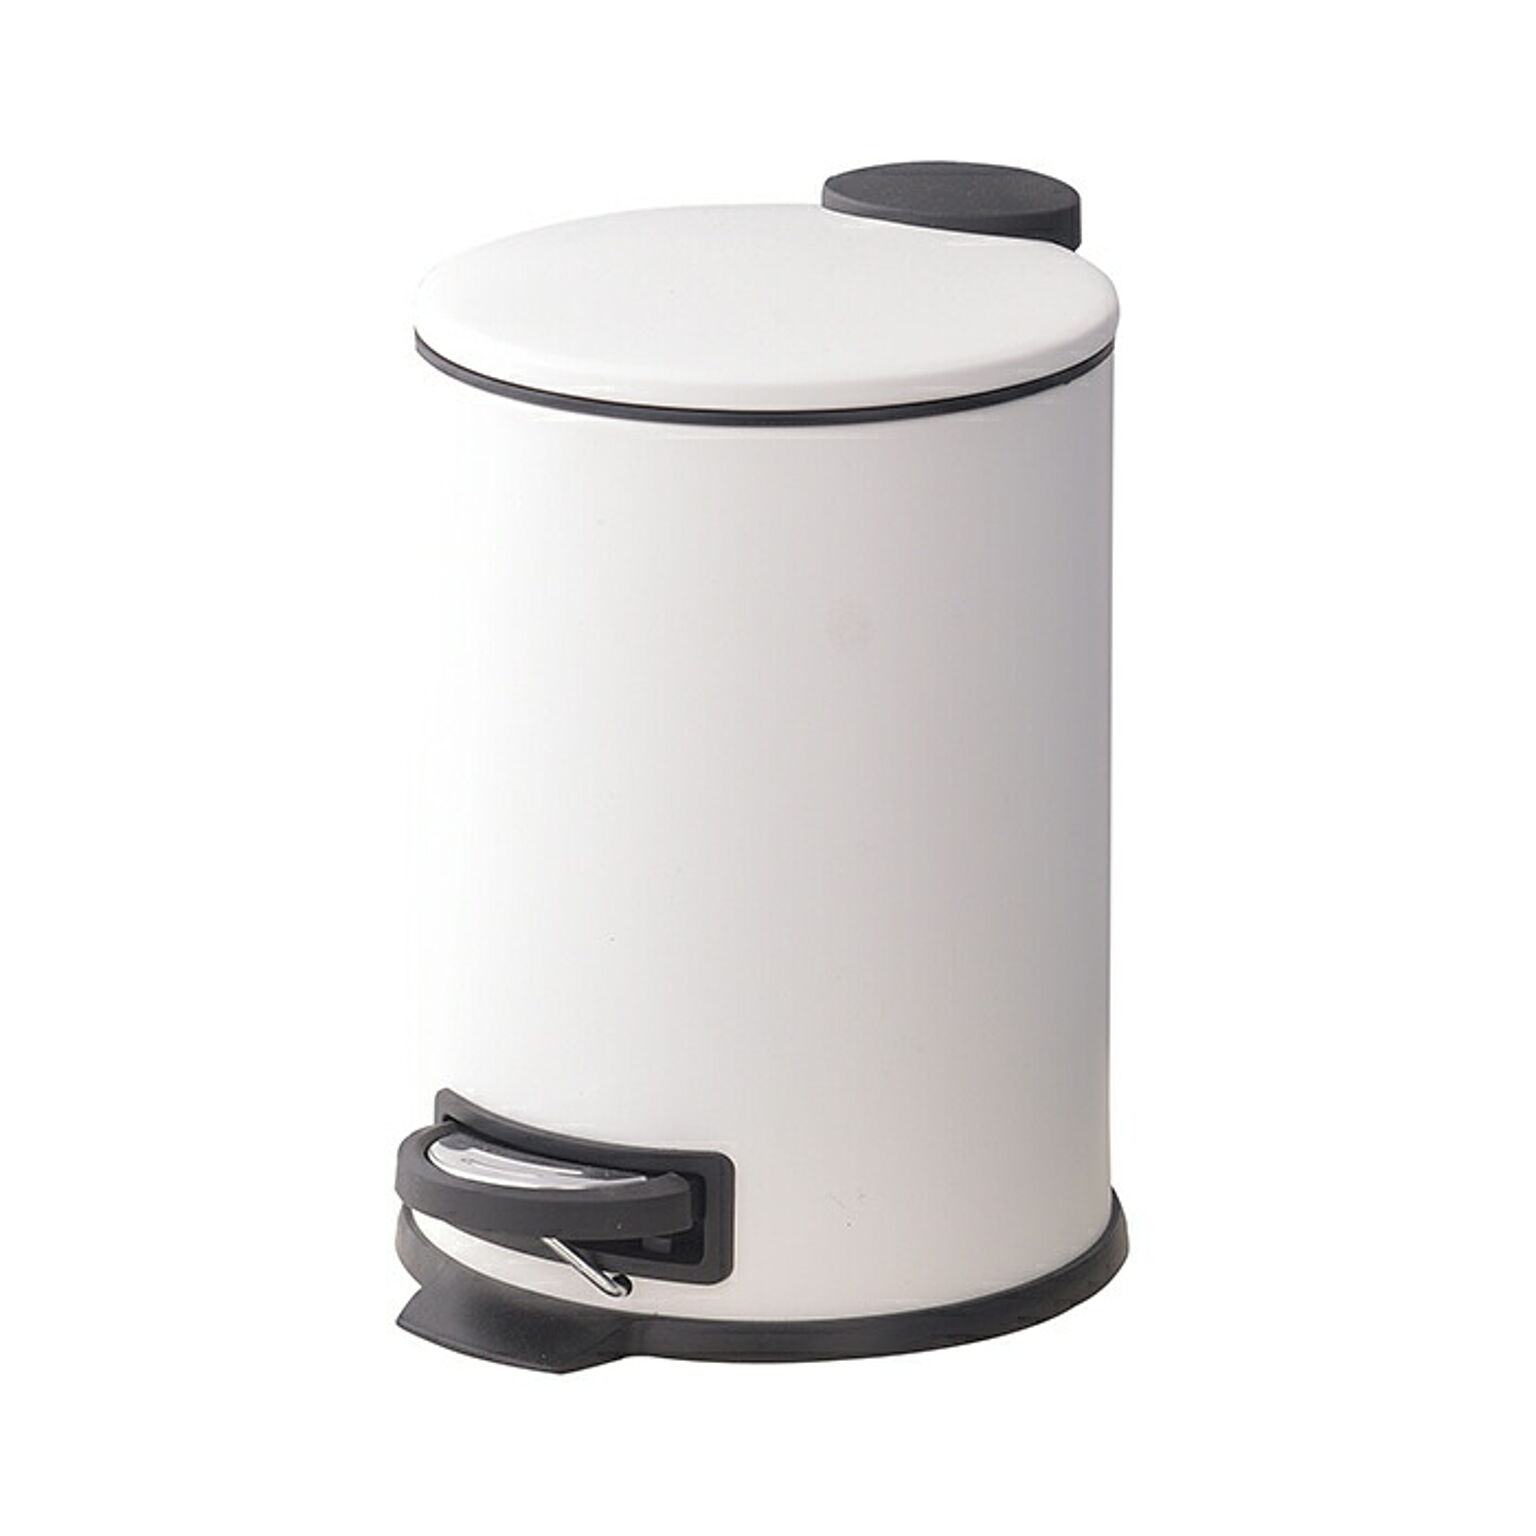 ゴミ箱 ダストボックス 3L 丸型 蓋付き ペダル式 インナーボックス 北欧 スリム コンパクト シンプル ホワイト グレー